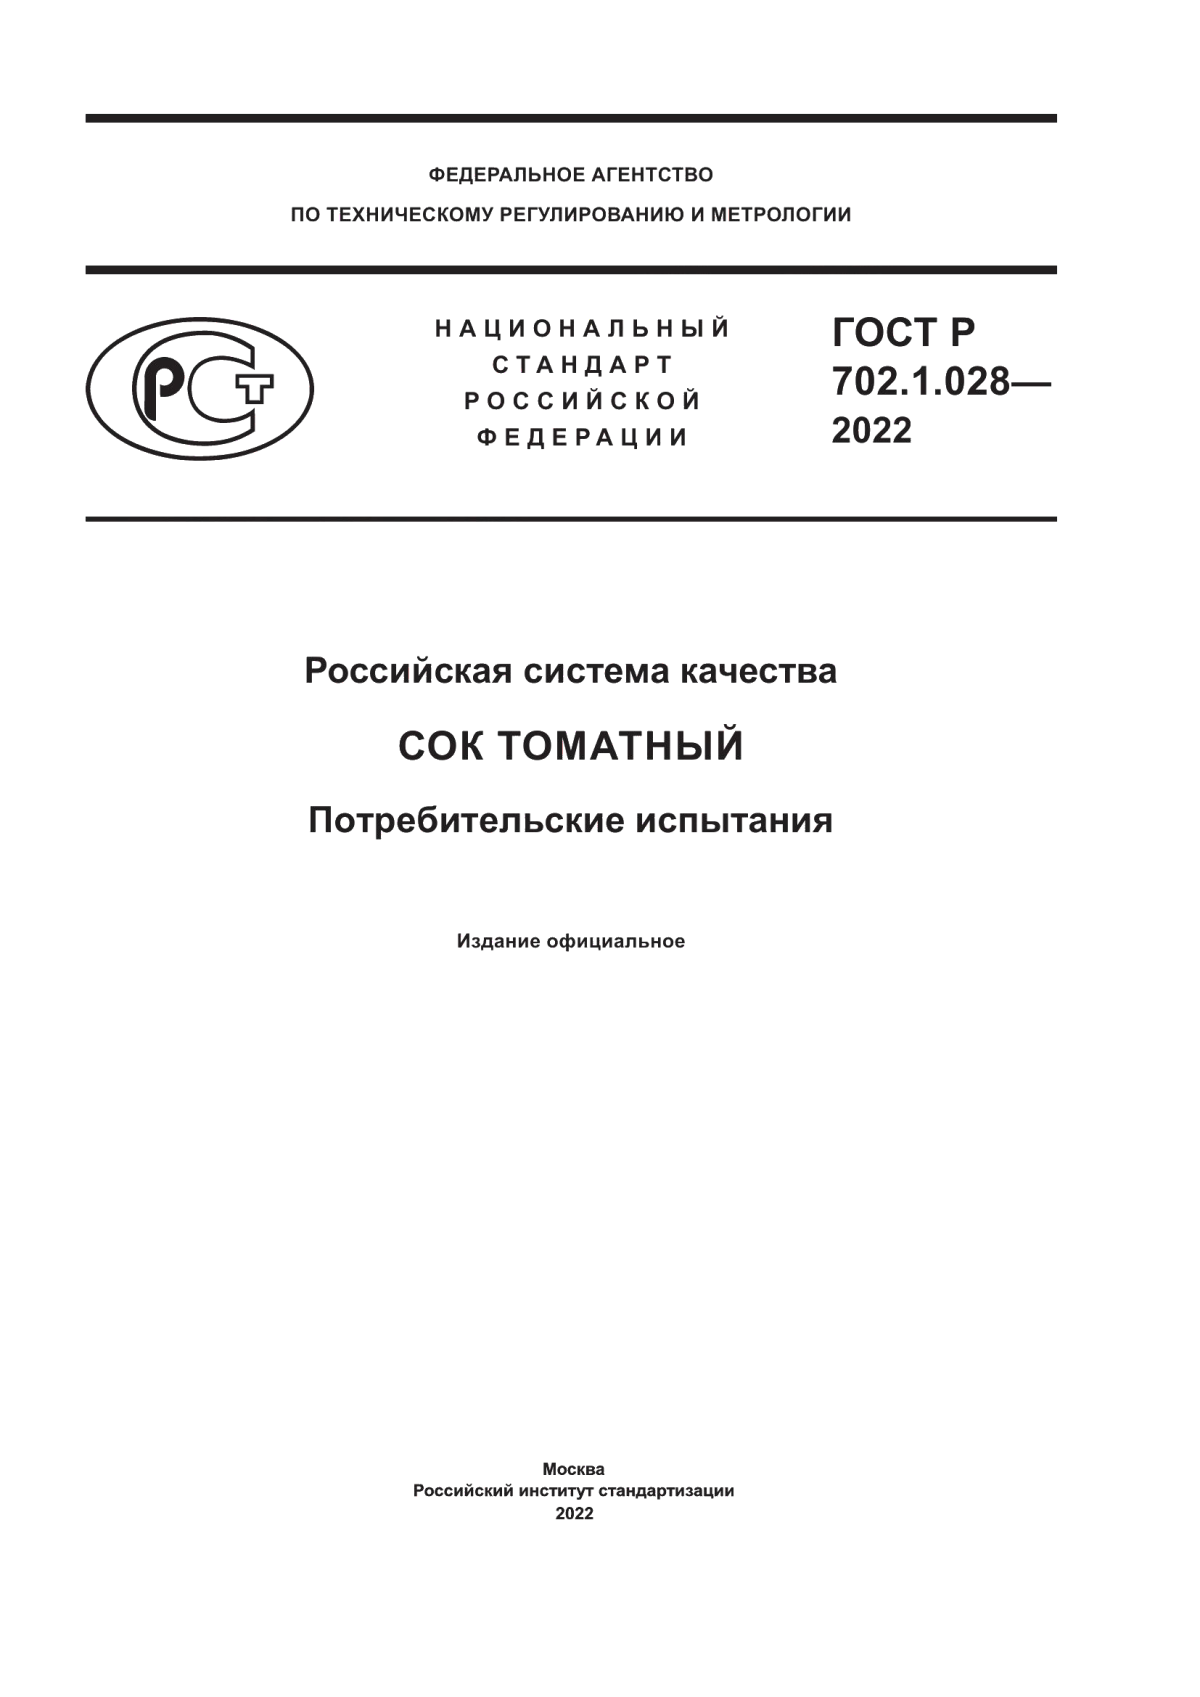 ГОСТ Р 702.1.028-2022 Российская система качества. Сок томатный. Потребительские испытания